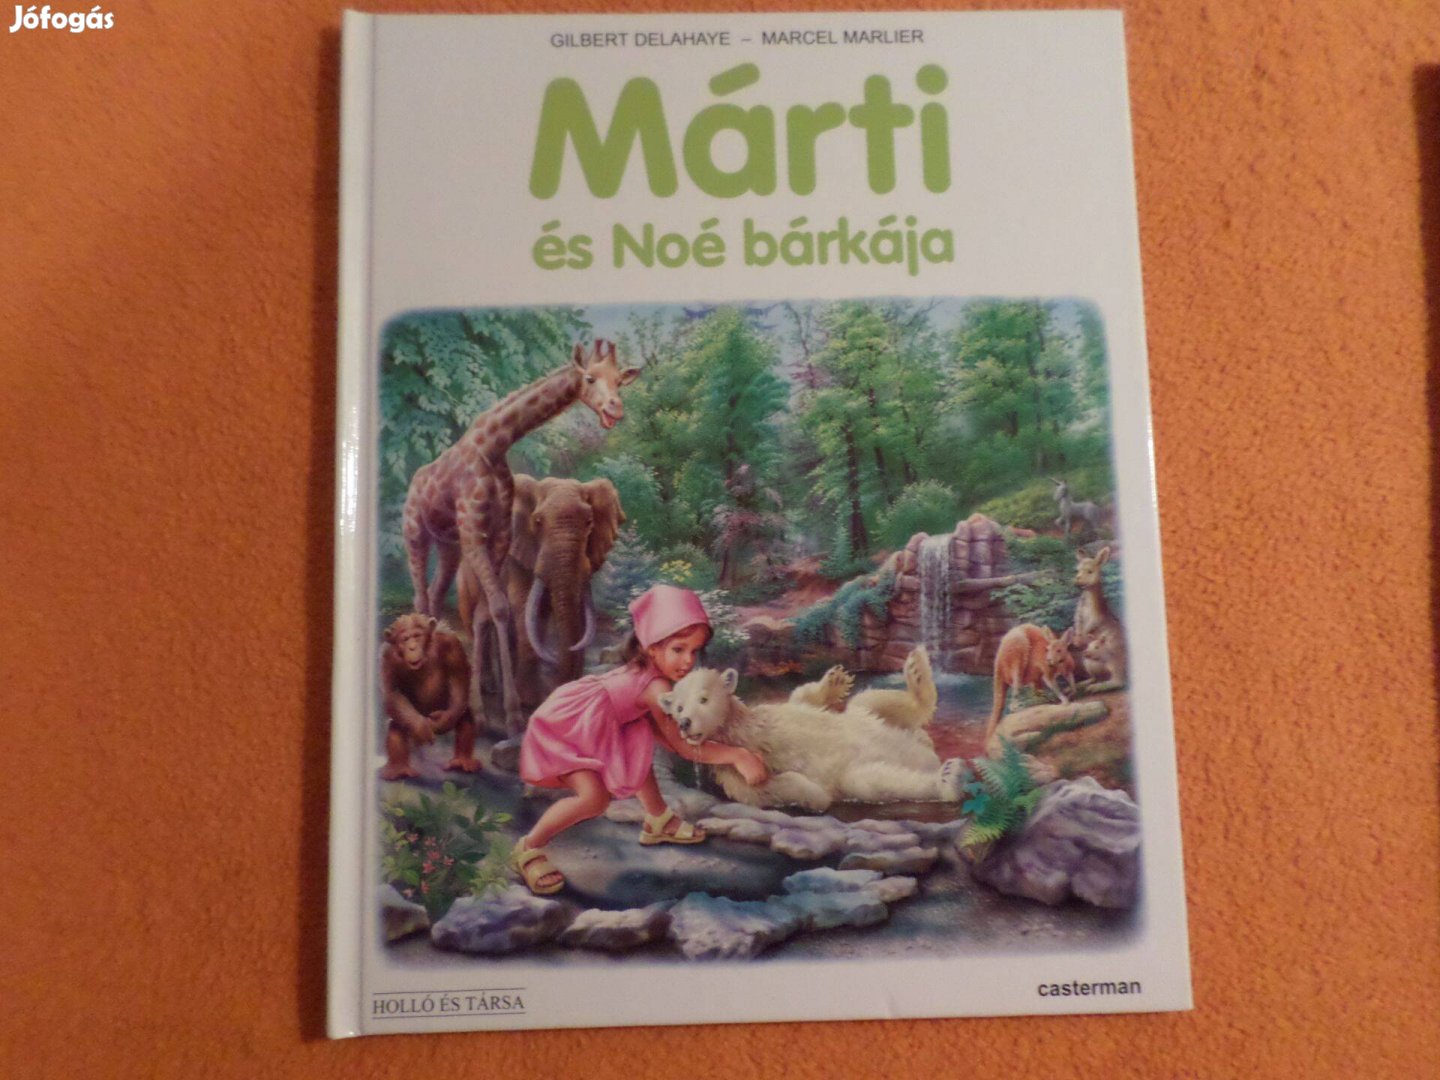 Gilbert Delahaye - Marcel Marlier Márti és Noé bárkája Gyermekkönyv